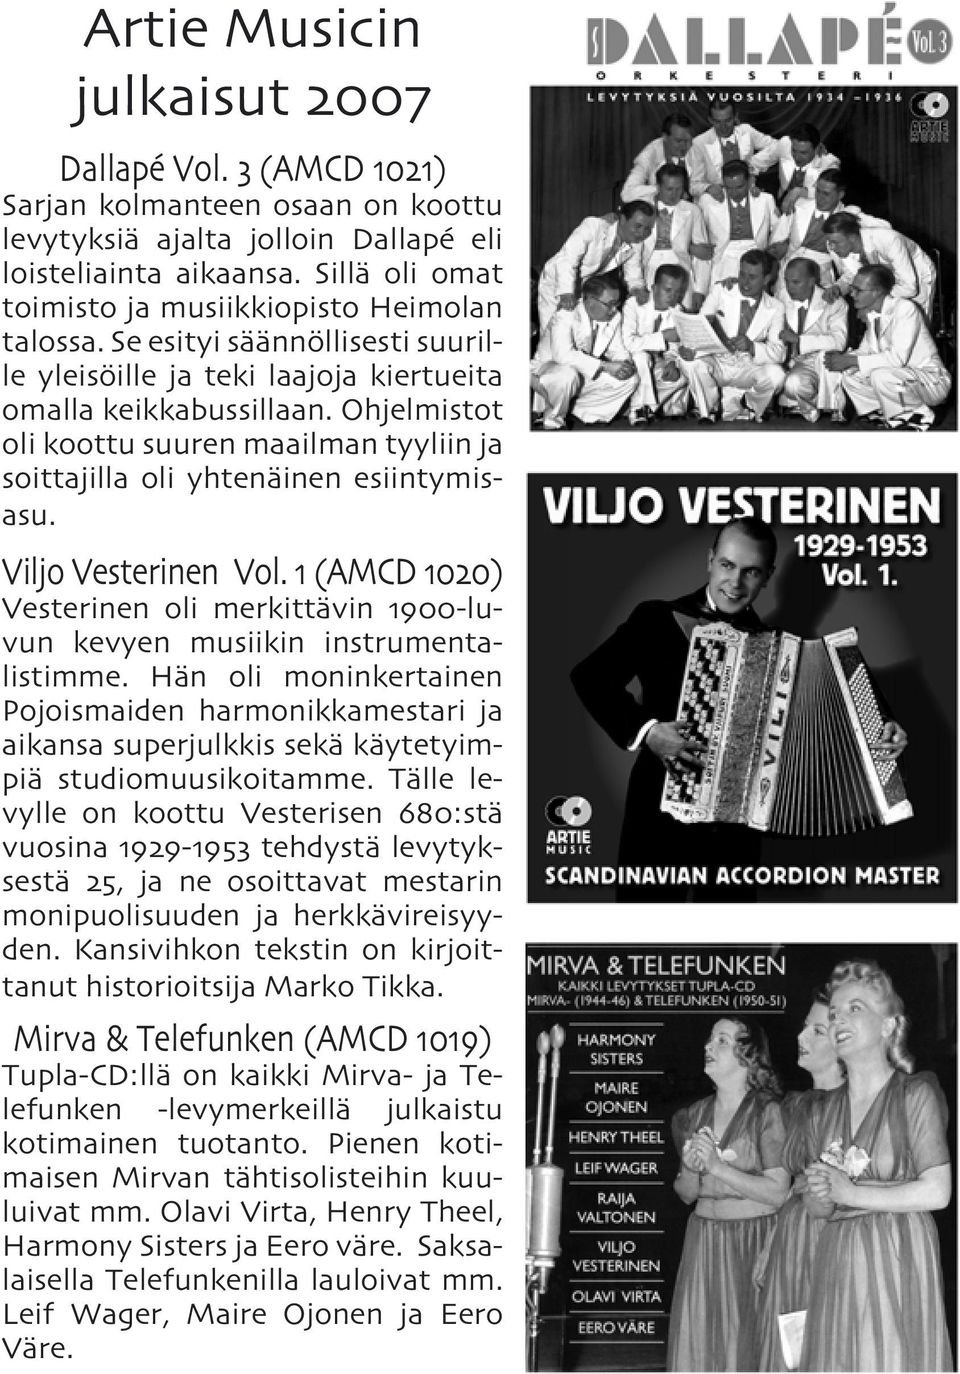 Ohjelmistot oli koottu suuren maailman tyyliin ja soittajilla oli yhtenäinen esiintymisasu. Viljo Vesterinen Vol.